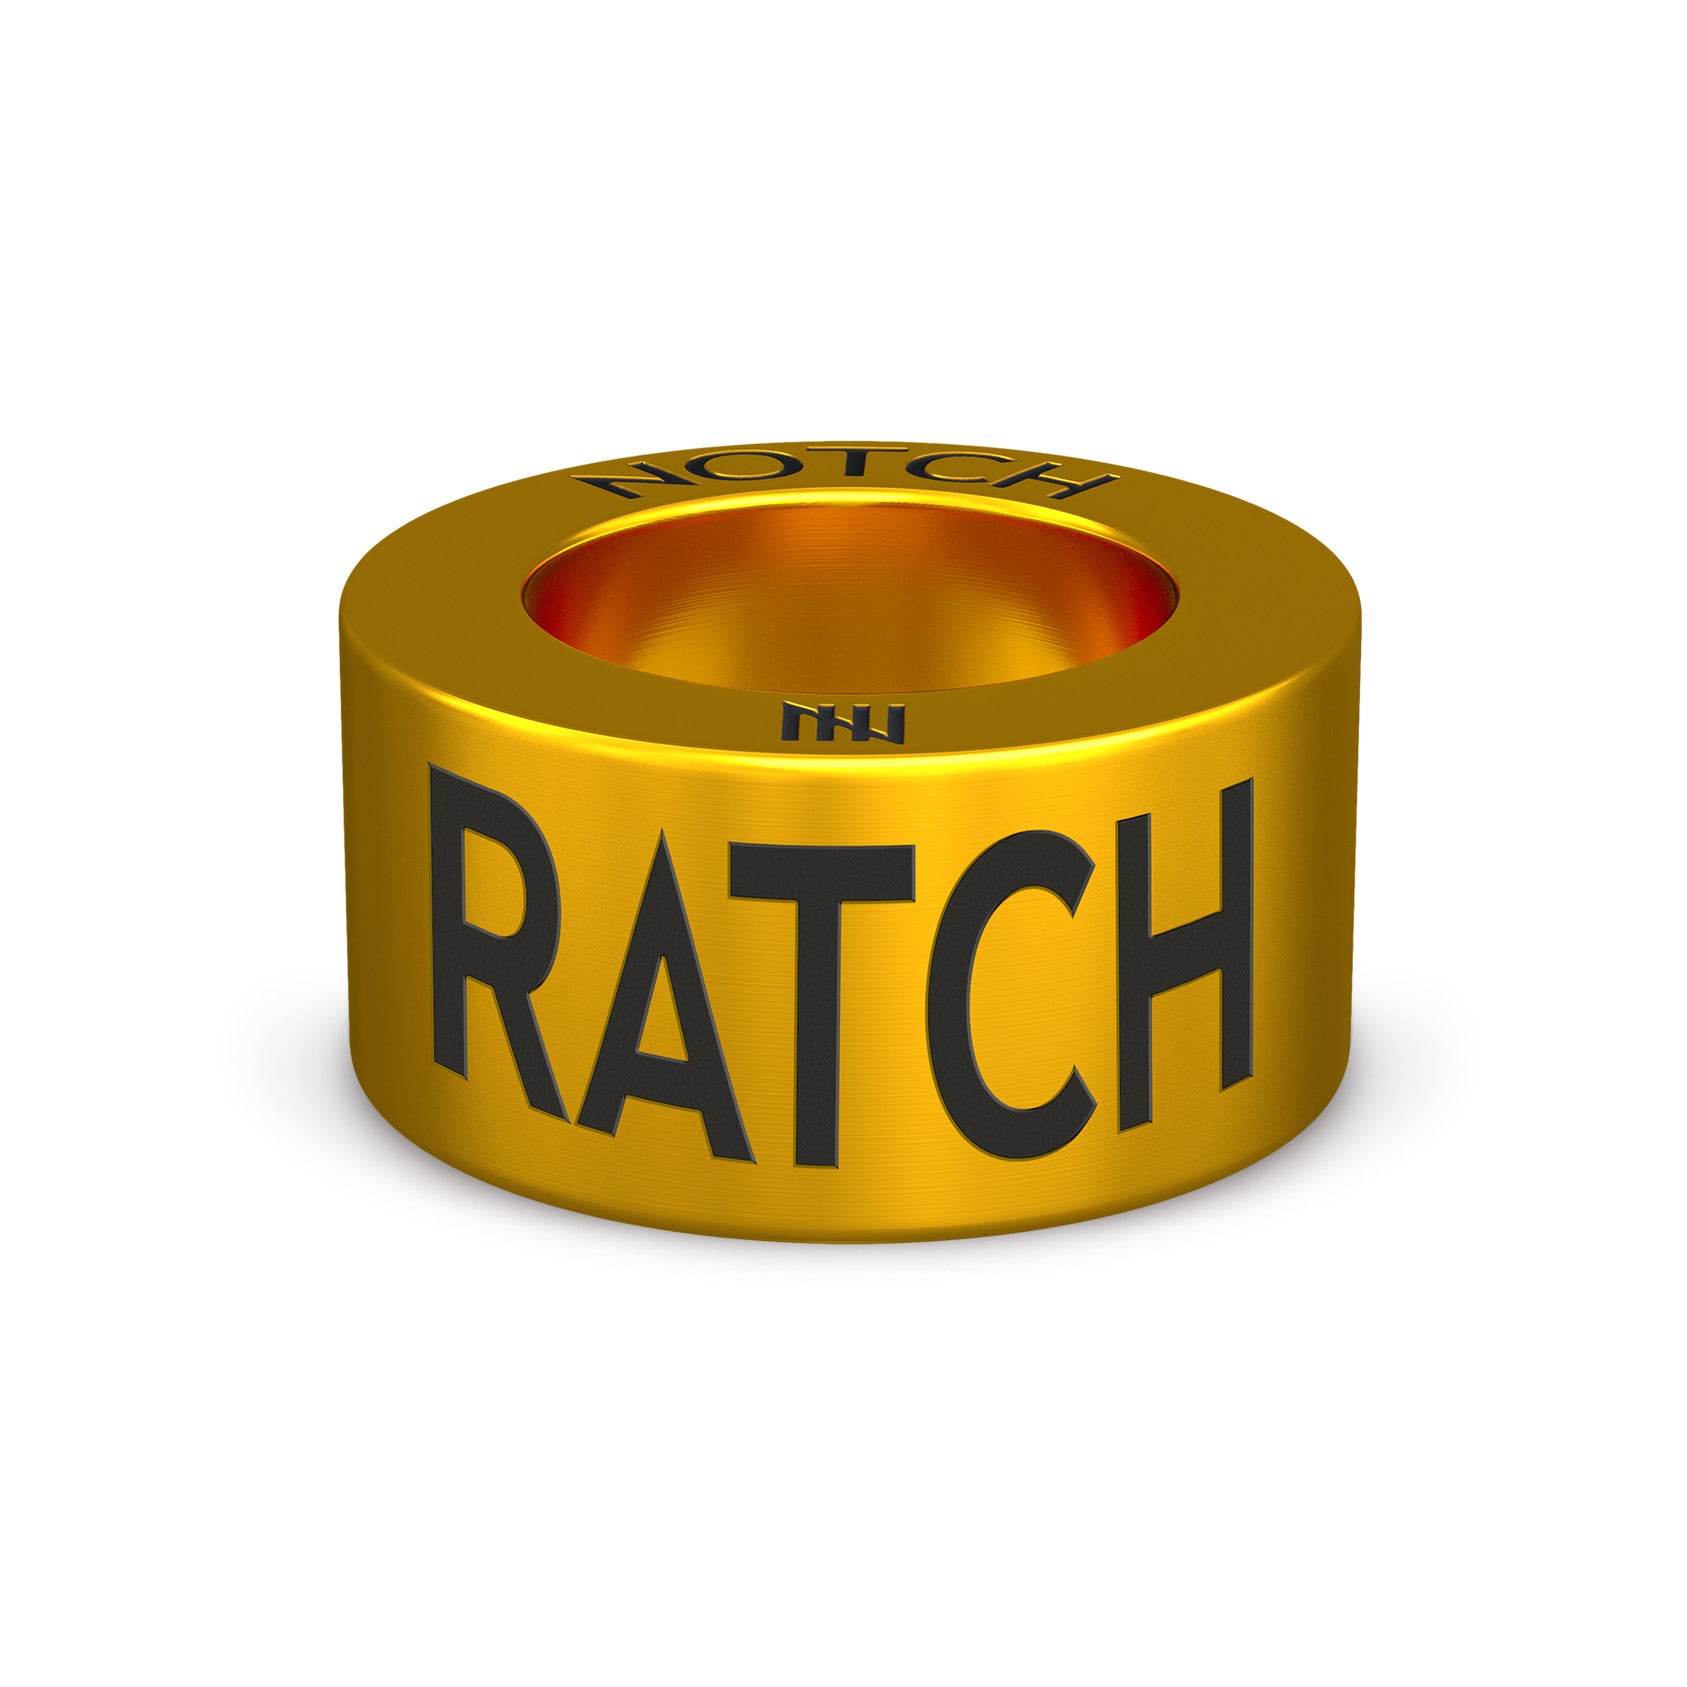 RATCH NOTCH Charm